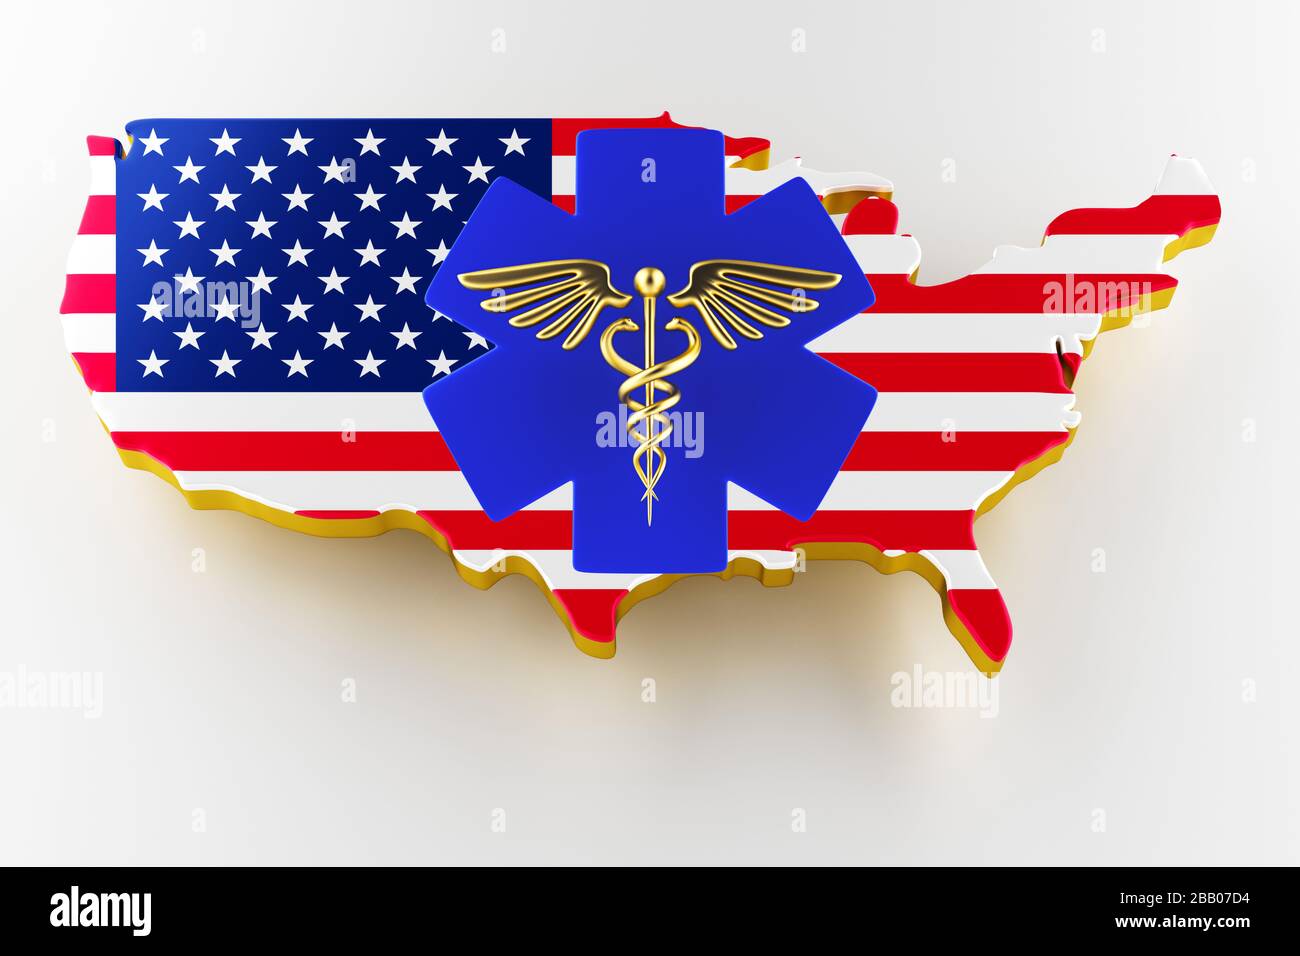 Caduceus Schild mit Schlangen auf einem medizinischen Stern. Karte der USA Landgrenze mit Flagge. USA-Karte auf weißem Hintergrund. 3D-Rendering Stockfoto